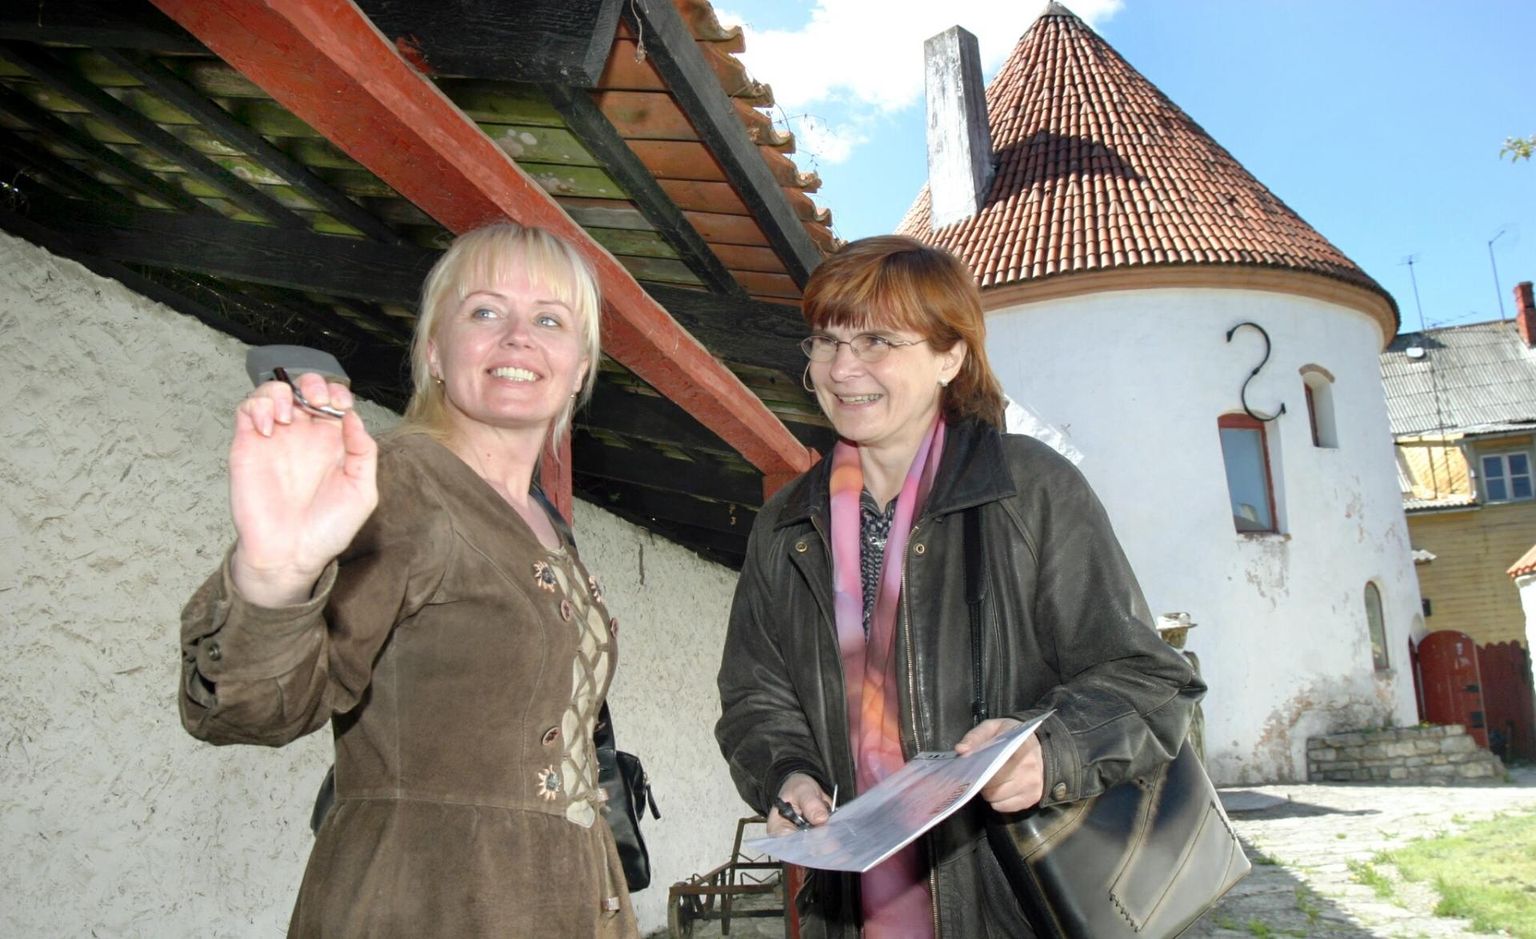 Üks elavamaid perioode Punase torni lähimine­vikus oli siis, kui seal toimetasid Riina Soon (vasakul) ja Ülle Ariko. Foto 17. mai 2004.